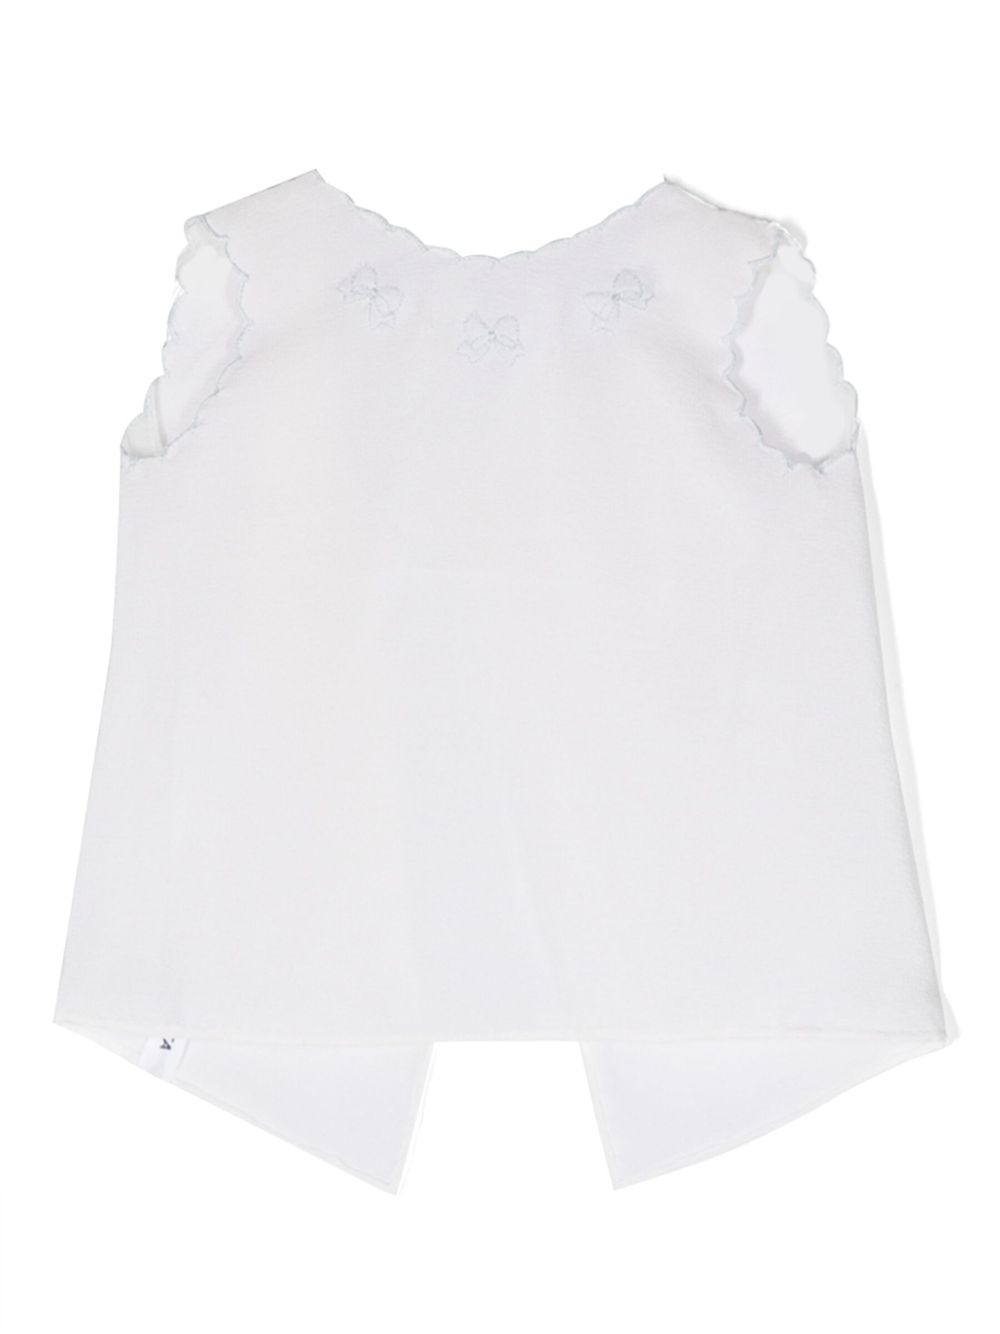 Mariella Ferrari Babies' Bow-print Sleeveless Shirt In White